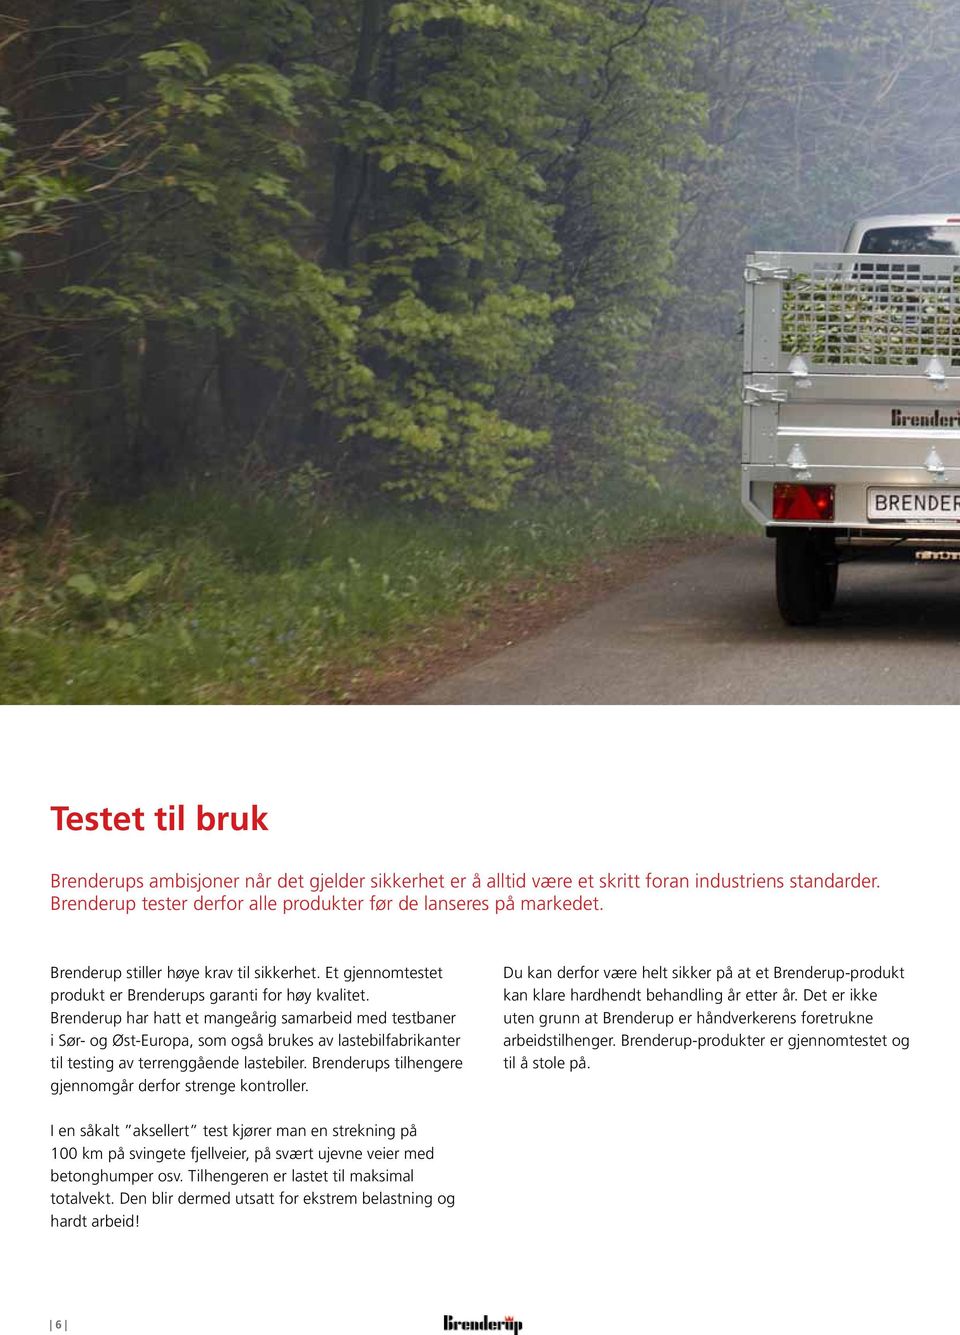 Brenderup har hatt et mangeårig samarbeid med testbaner i Sør- og Øst-Europa, som også brukes av lastebilfabrikanter til testing av terrenggående lastebiler.